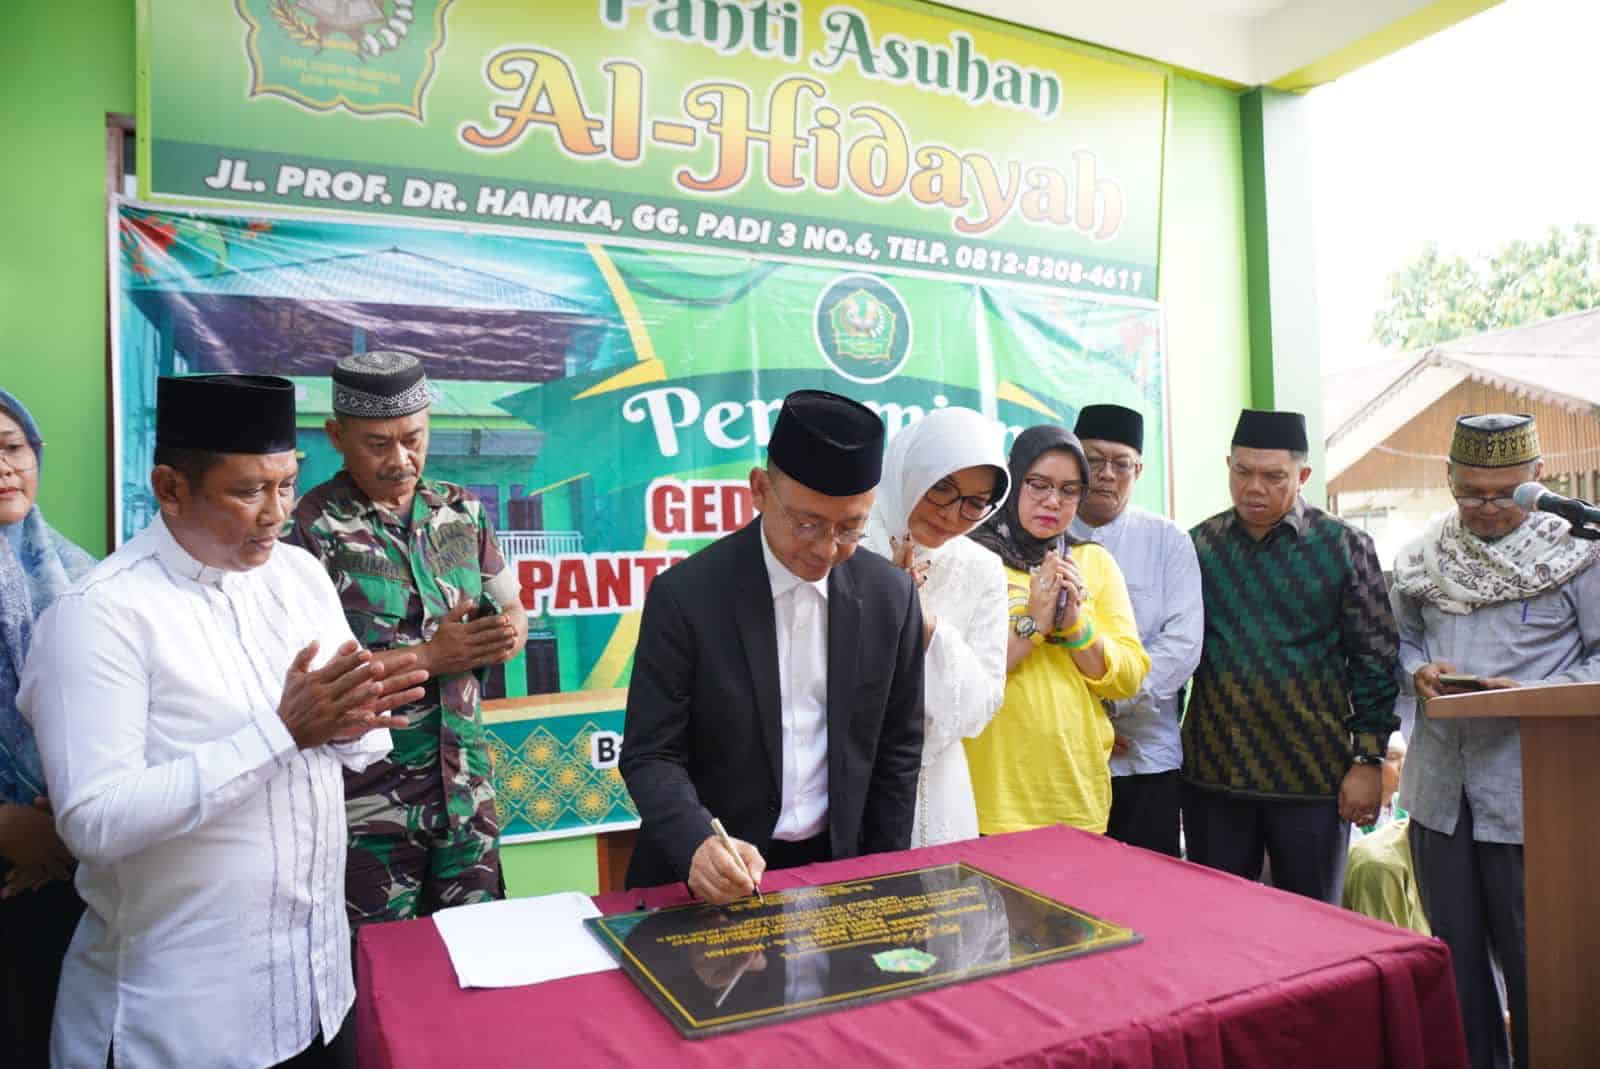 Wali Kota Pontianak, Edi Rusdi Kamtono menandatangani prasasti menandai diresmikannya Gedung Panti Asuhan Al-Hidayah di Gang Padi III. (Foto: Prokopim Pontianak)